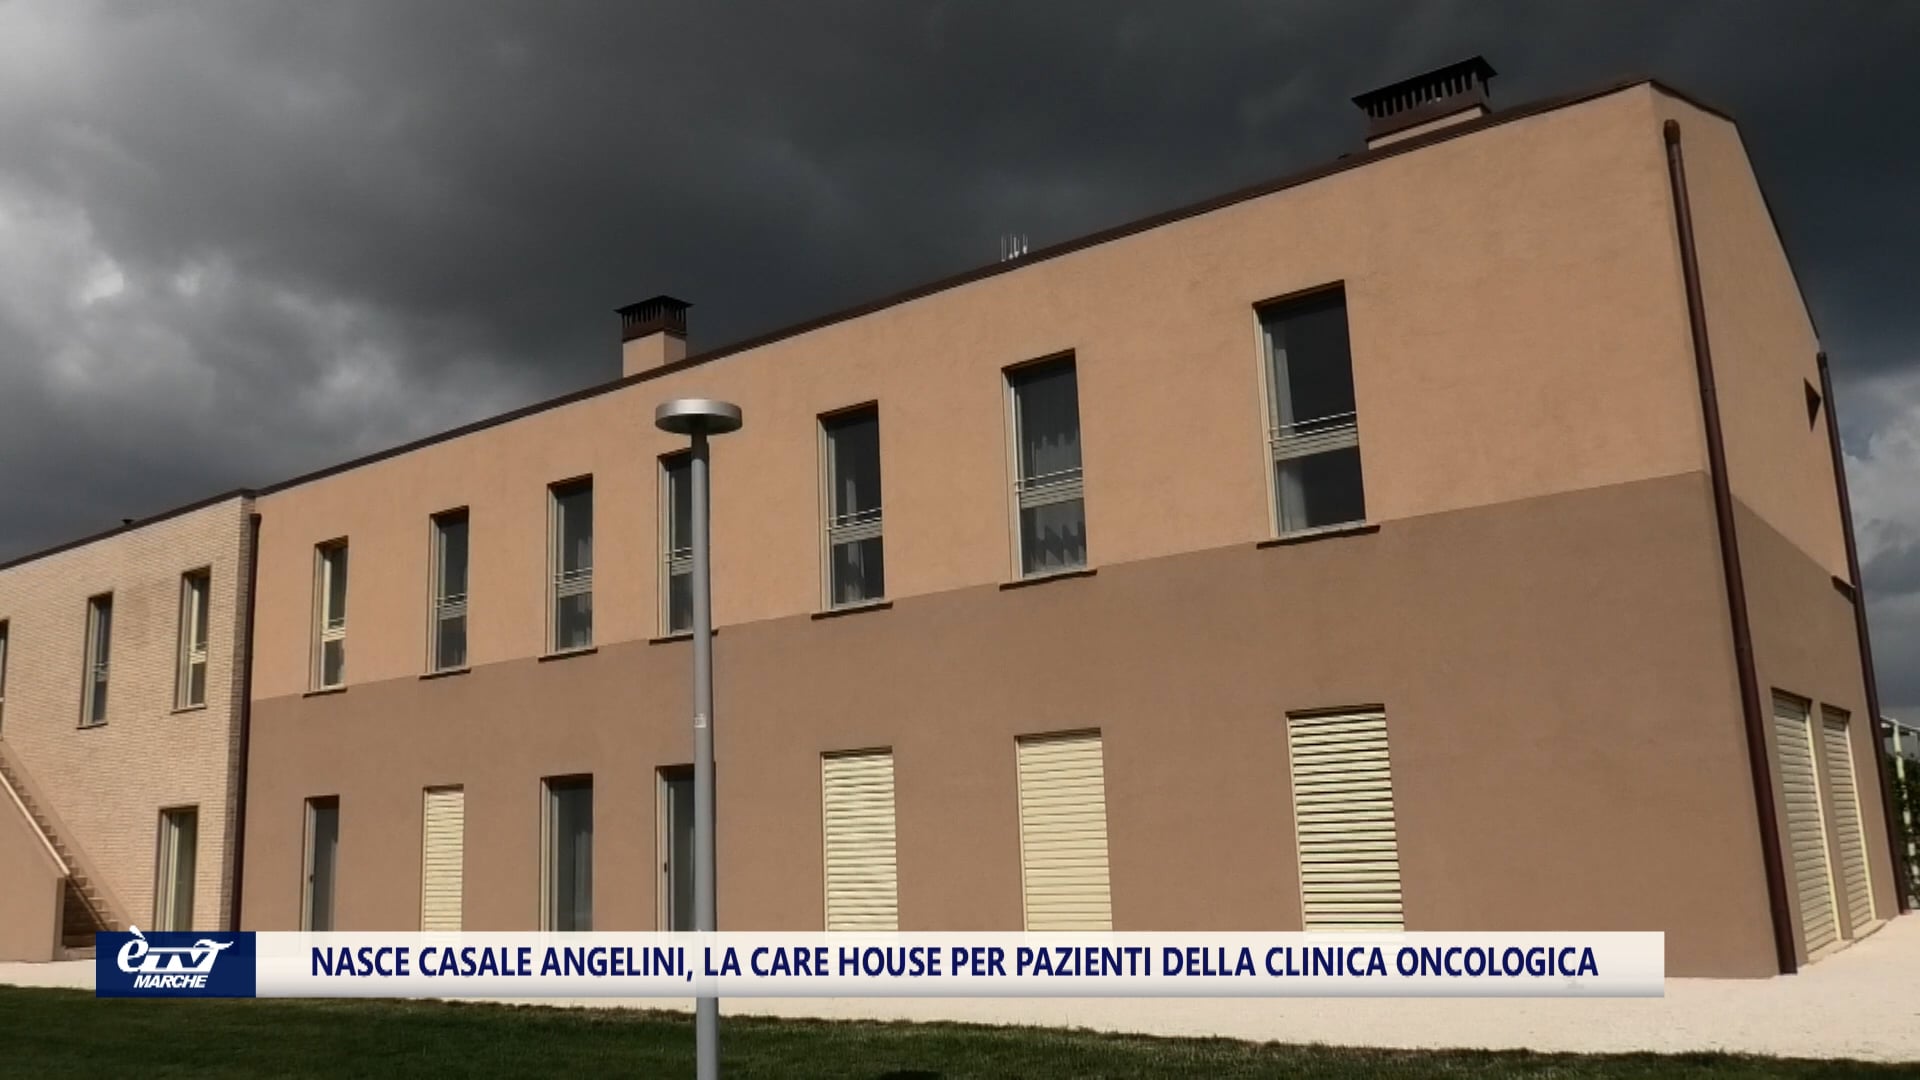 Nasce casale Angelini, la care house per pazienti della clinica oncologica